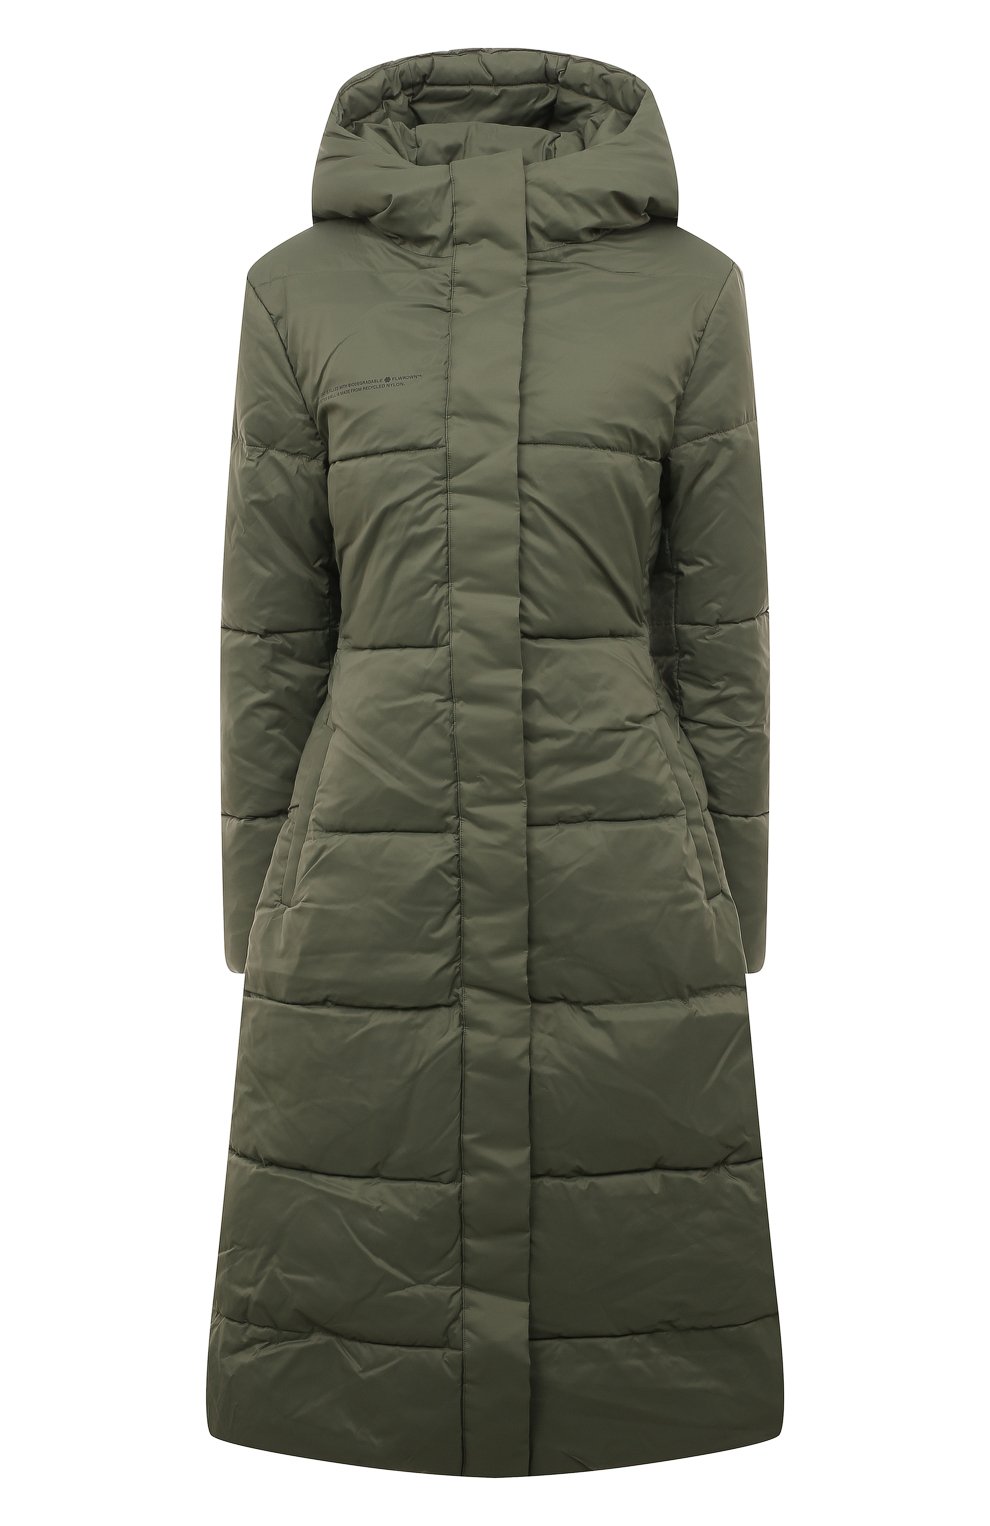 Куртки PANGAIA, Утепленная куртка PANGAIA, Португалия, Зелёный, Переработанный нейлон: 100%; Подкладка-нейлон: 100%; Наполнитель-нейлон: 100%;, 13157977  - купить